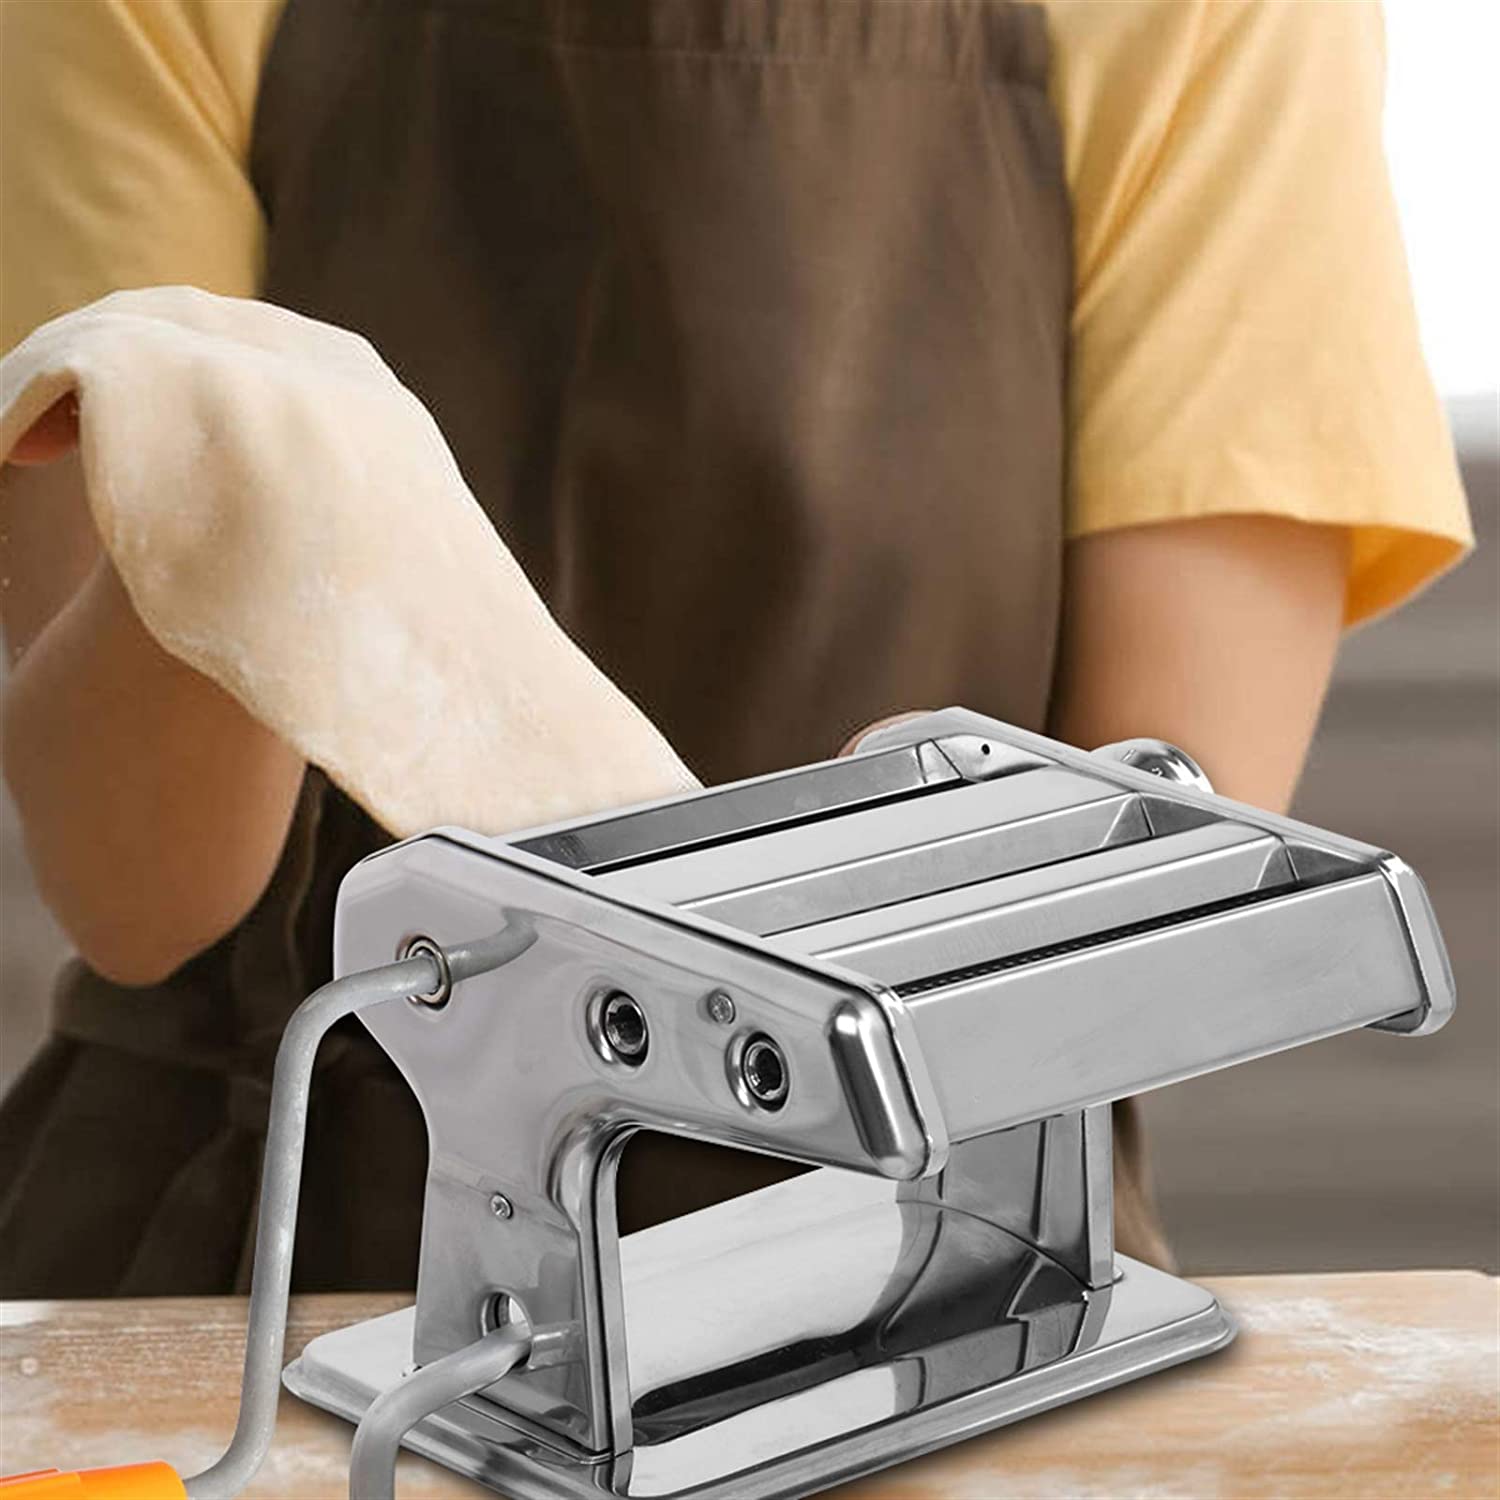 Máquina para hacer pastas 3 en 1 – Tienda Mish!